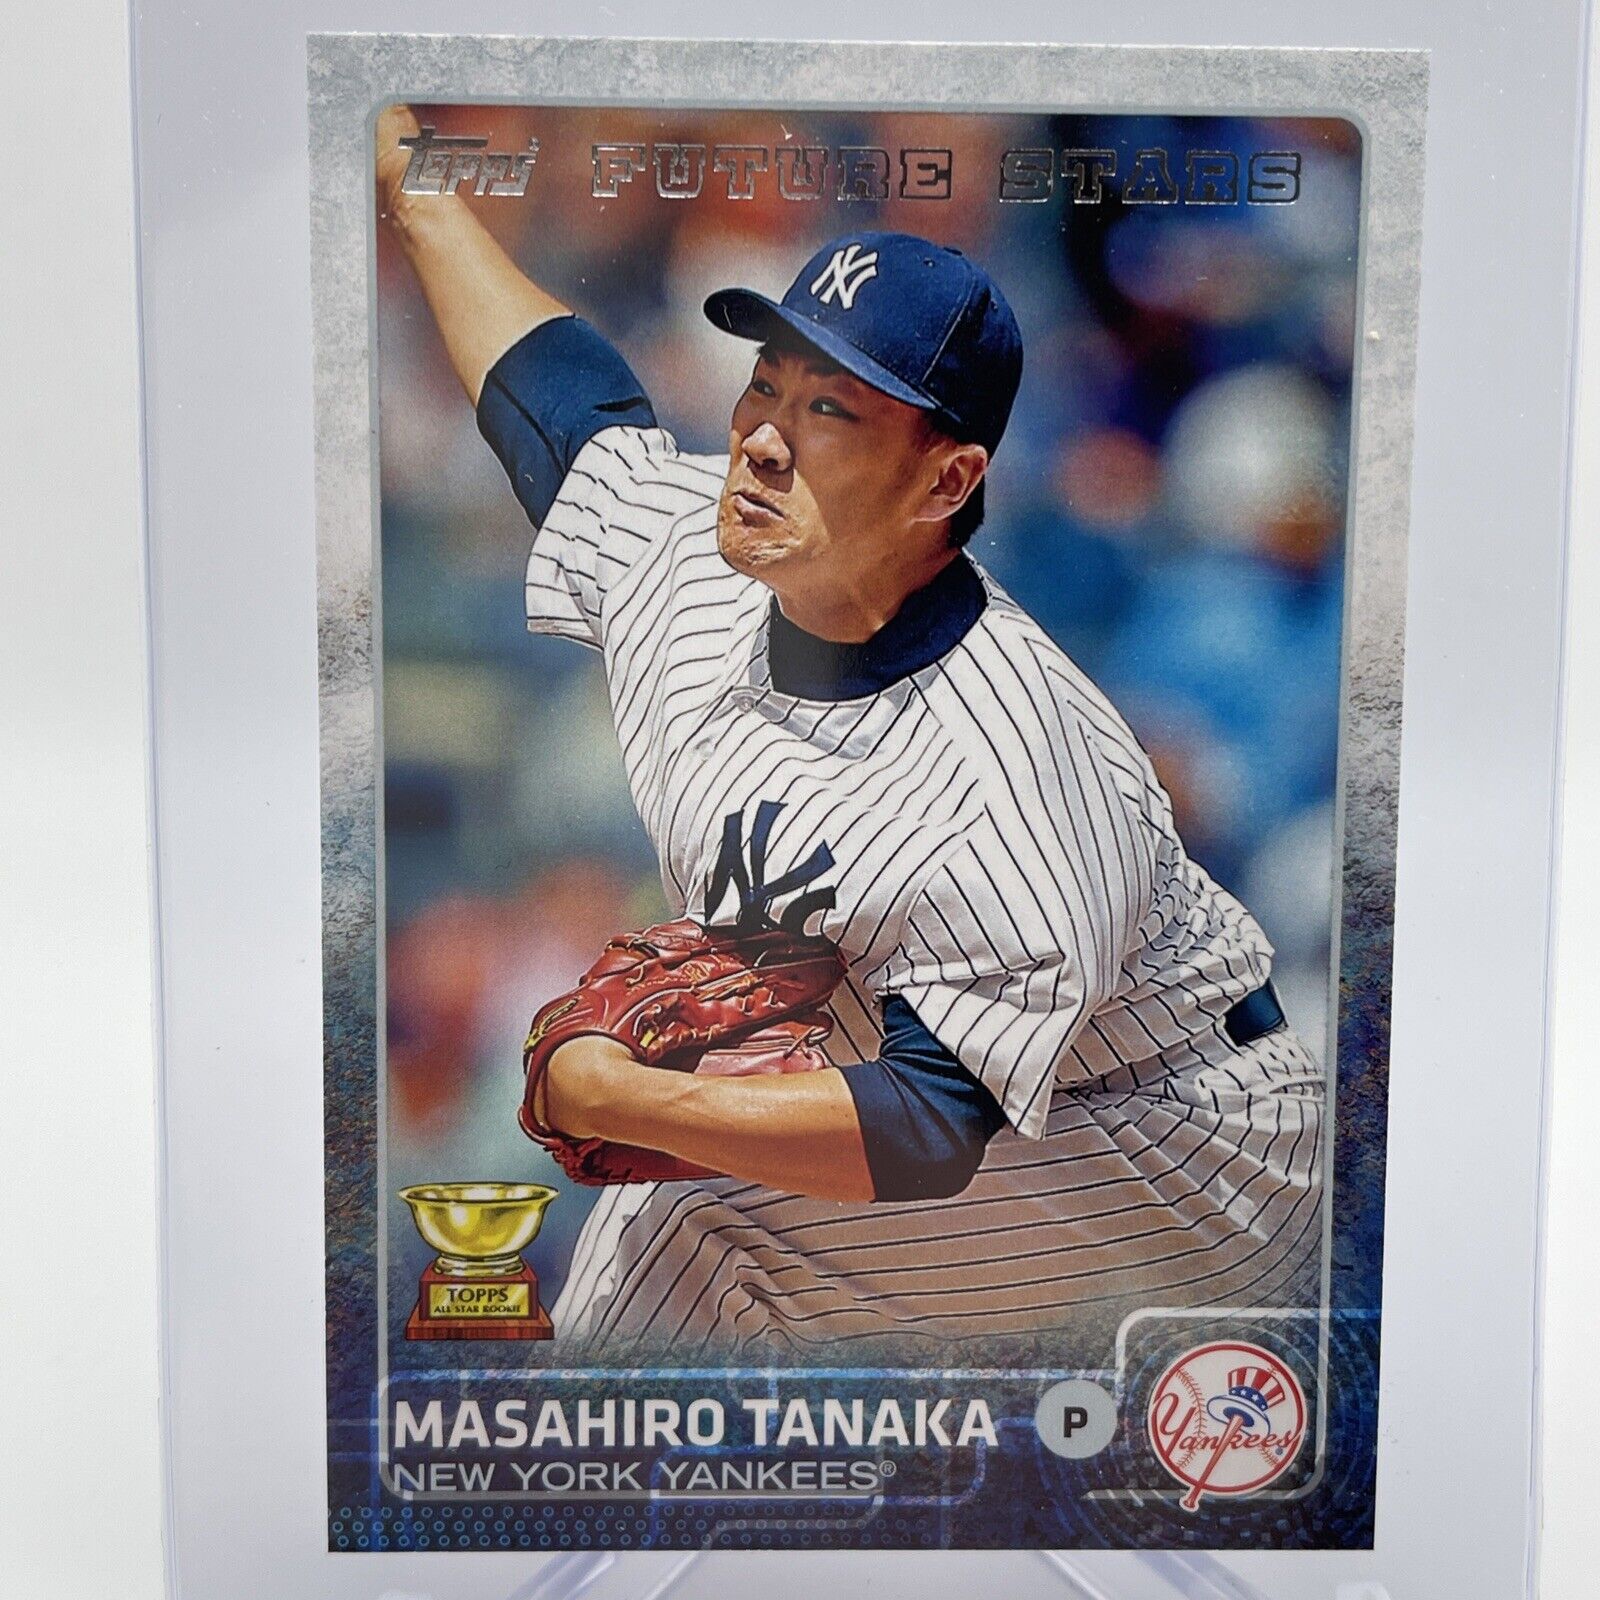 2015 Topps Masahiro Tanaka Baseball Card #142 Mint 